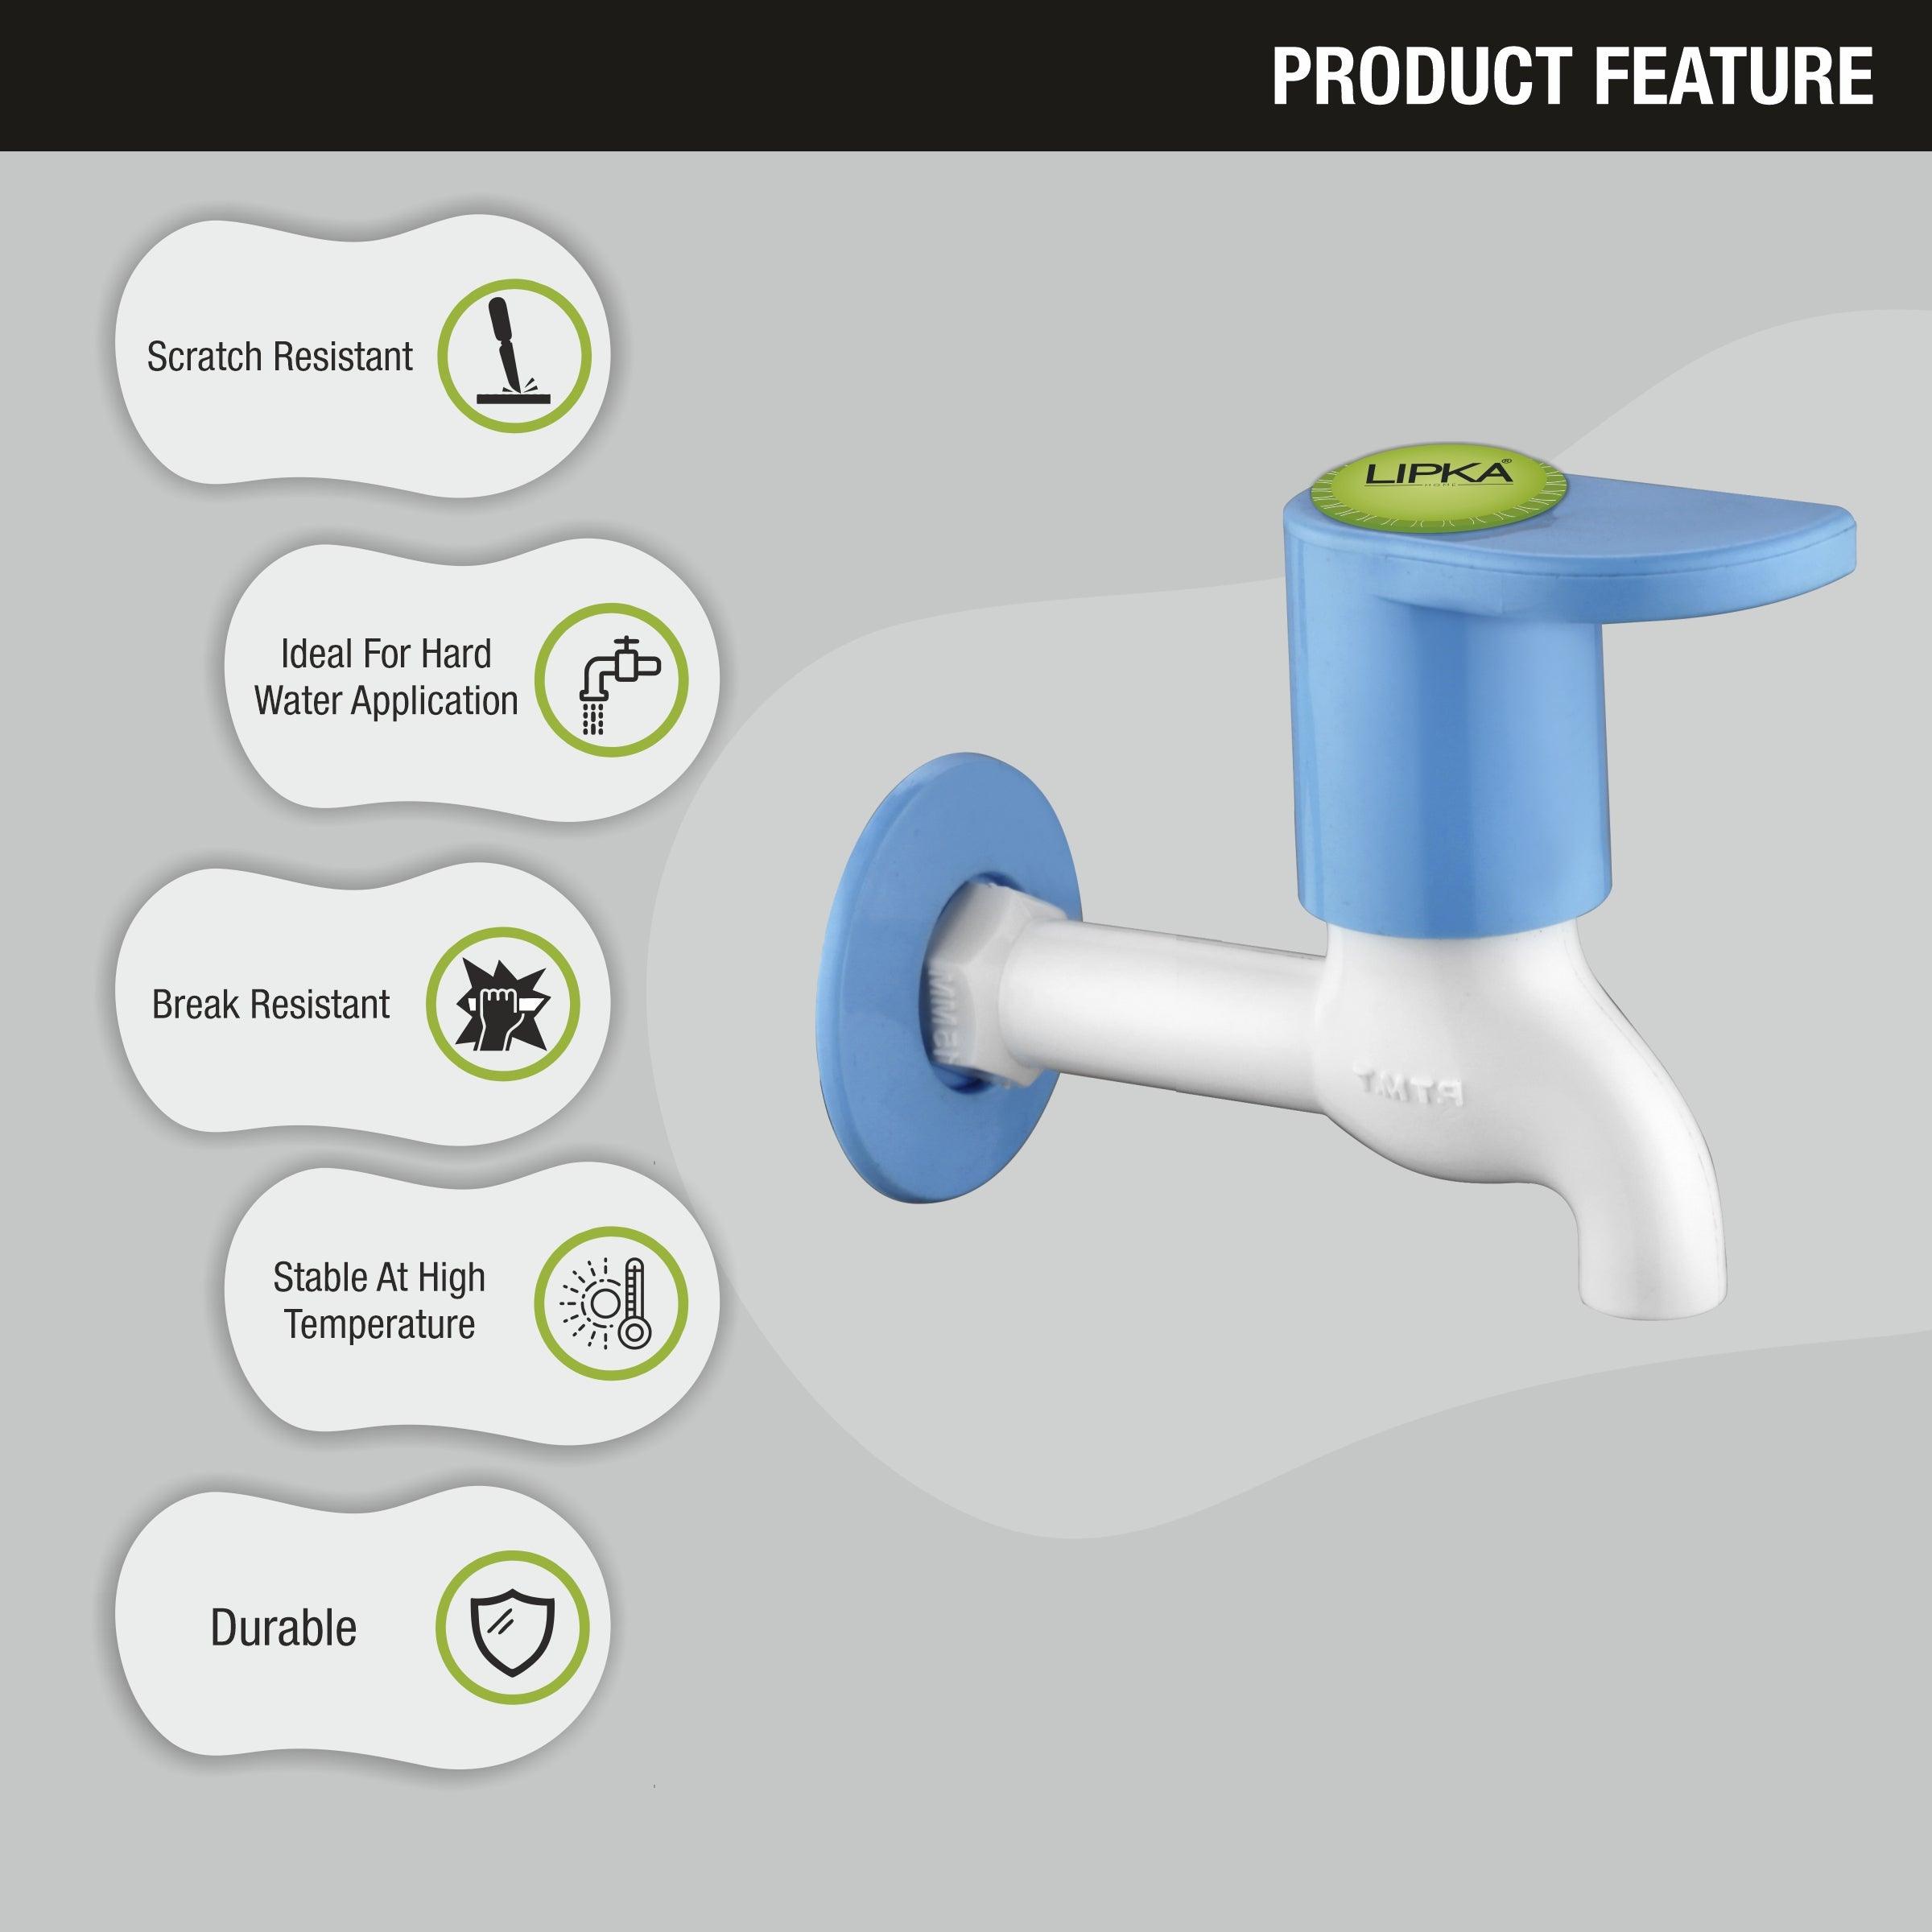 Sky Bib Tap PTMT Faucet features